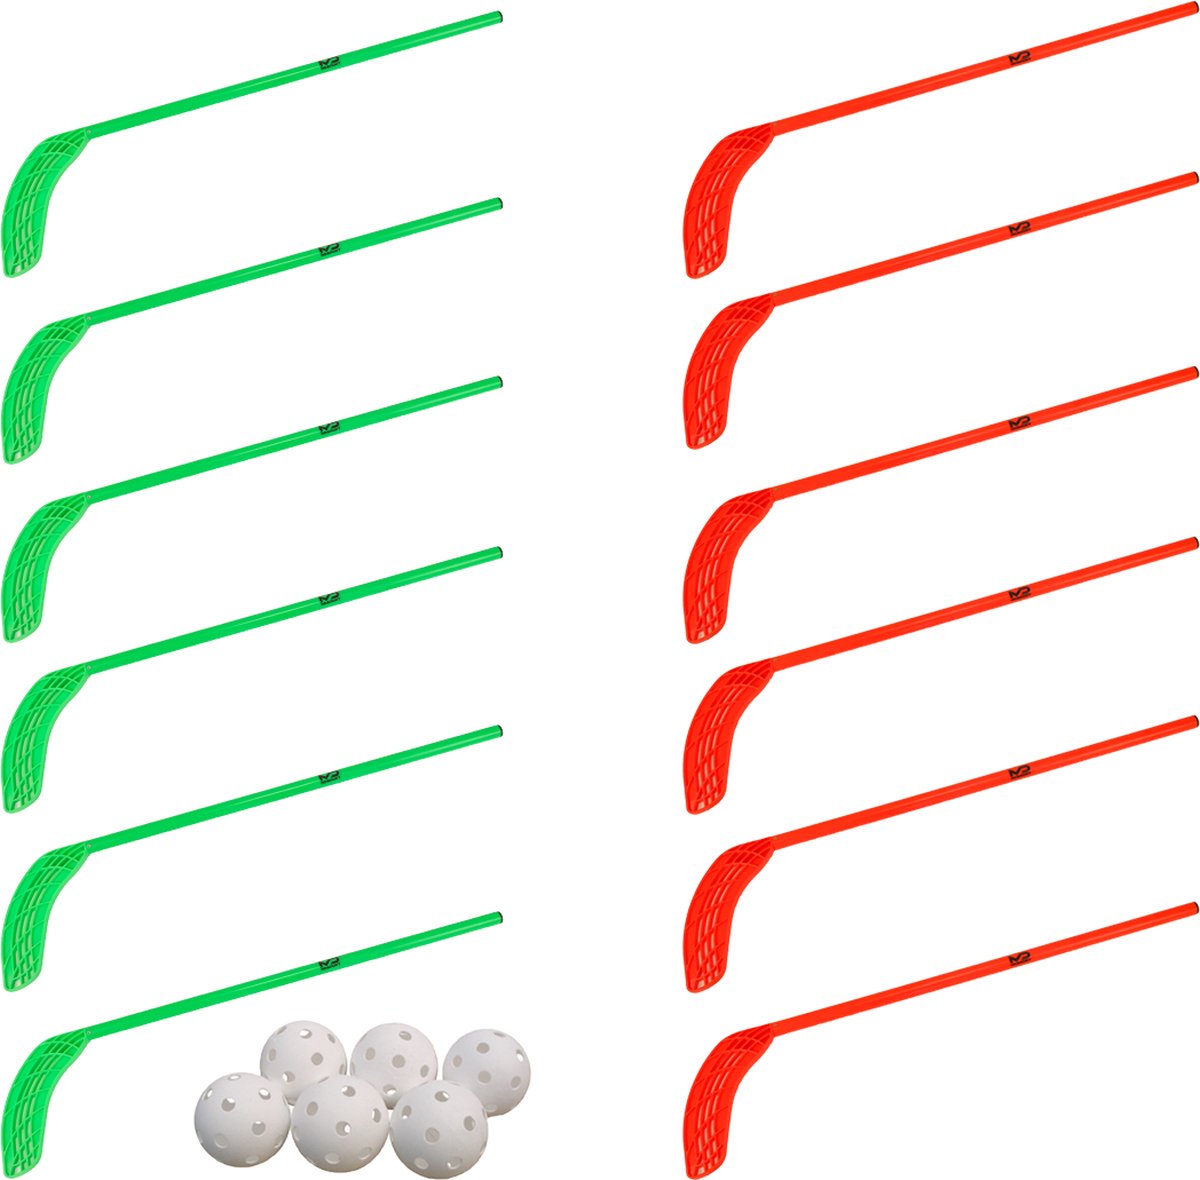 MDsport - Unihockey sticks - Floorball sticks - Kunststof hockeysticks - Set van 12 + 6 ballen - Voortgezet Onderwijs - Groen / Rood